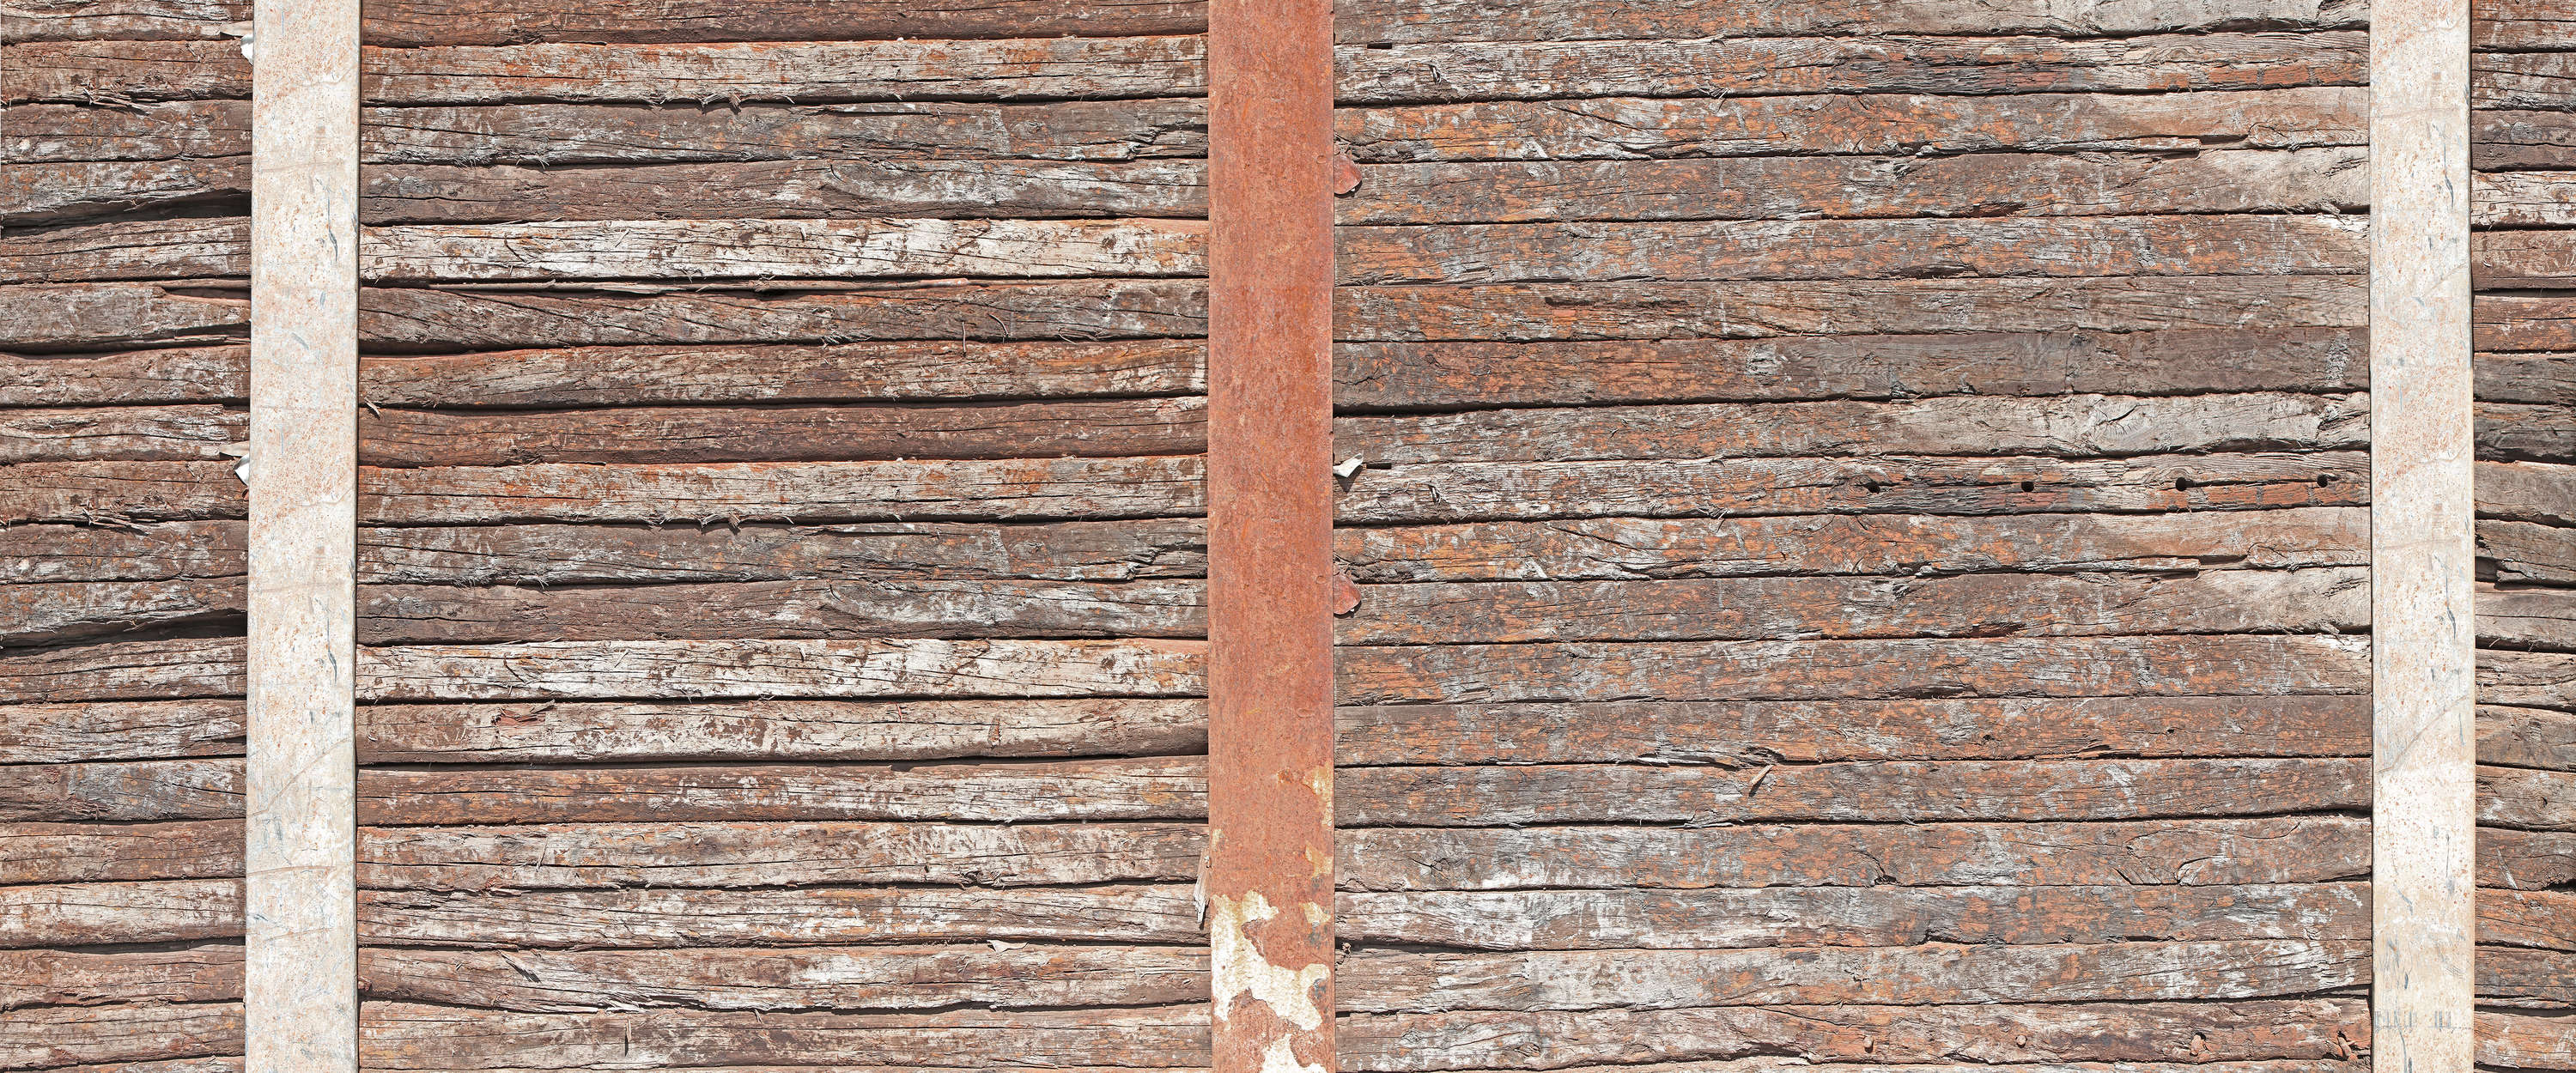             Muurschildering oude houten muur tussen roestige stalen balken
        